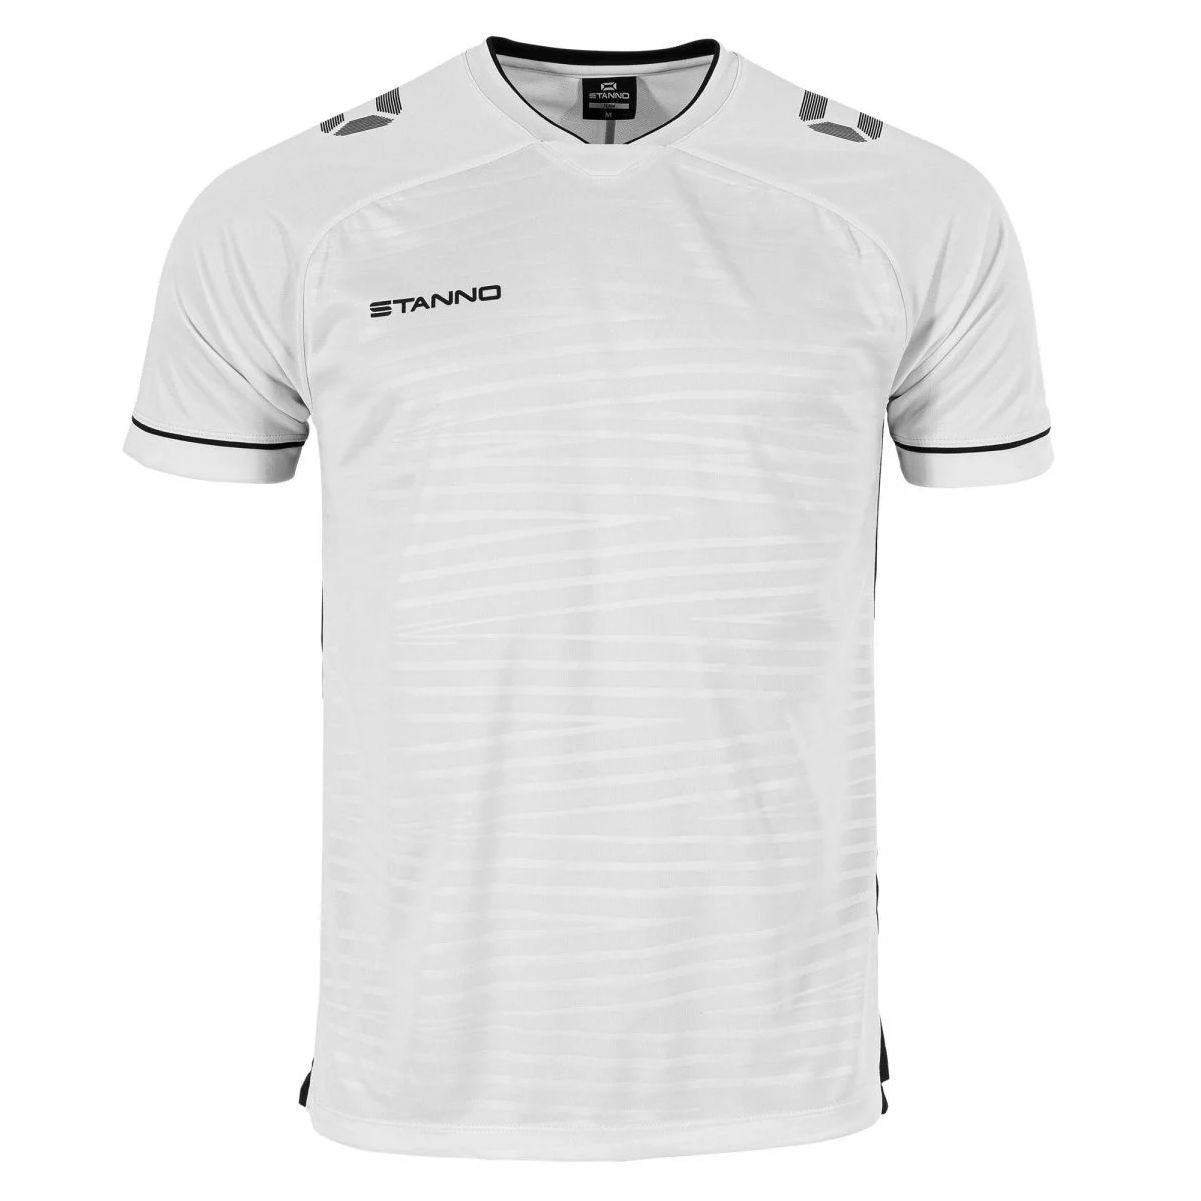 Stanno - Dash Shirt - White & Black